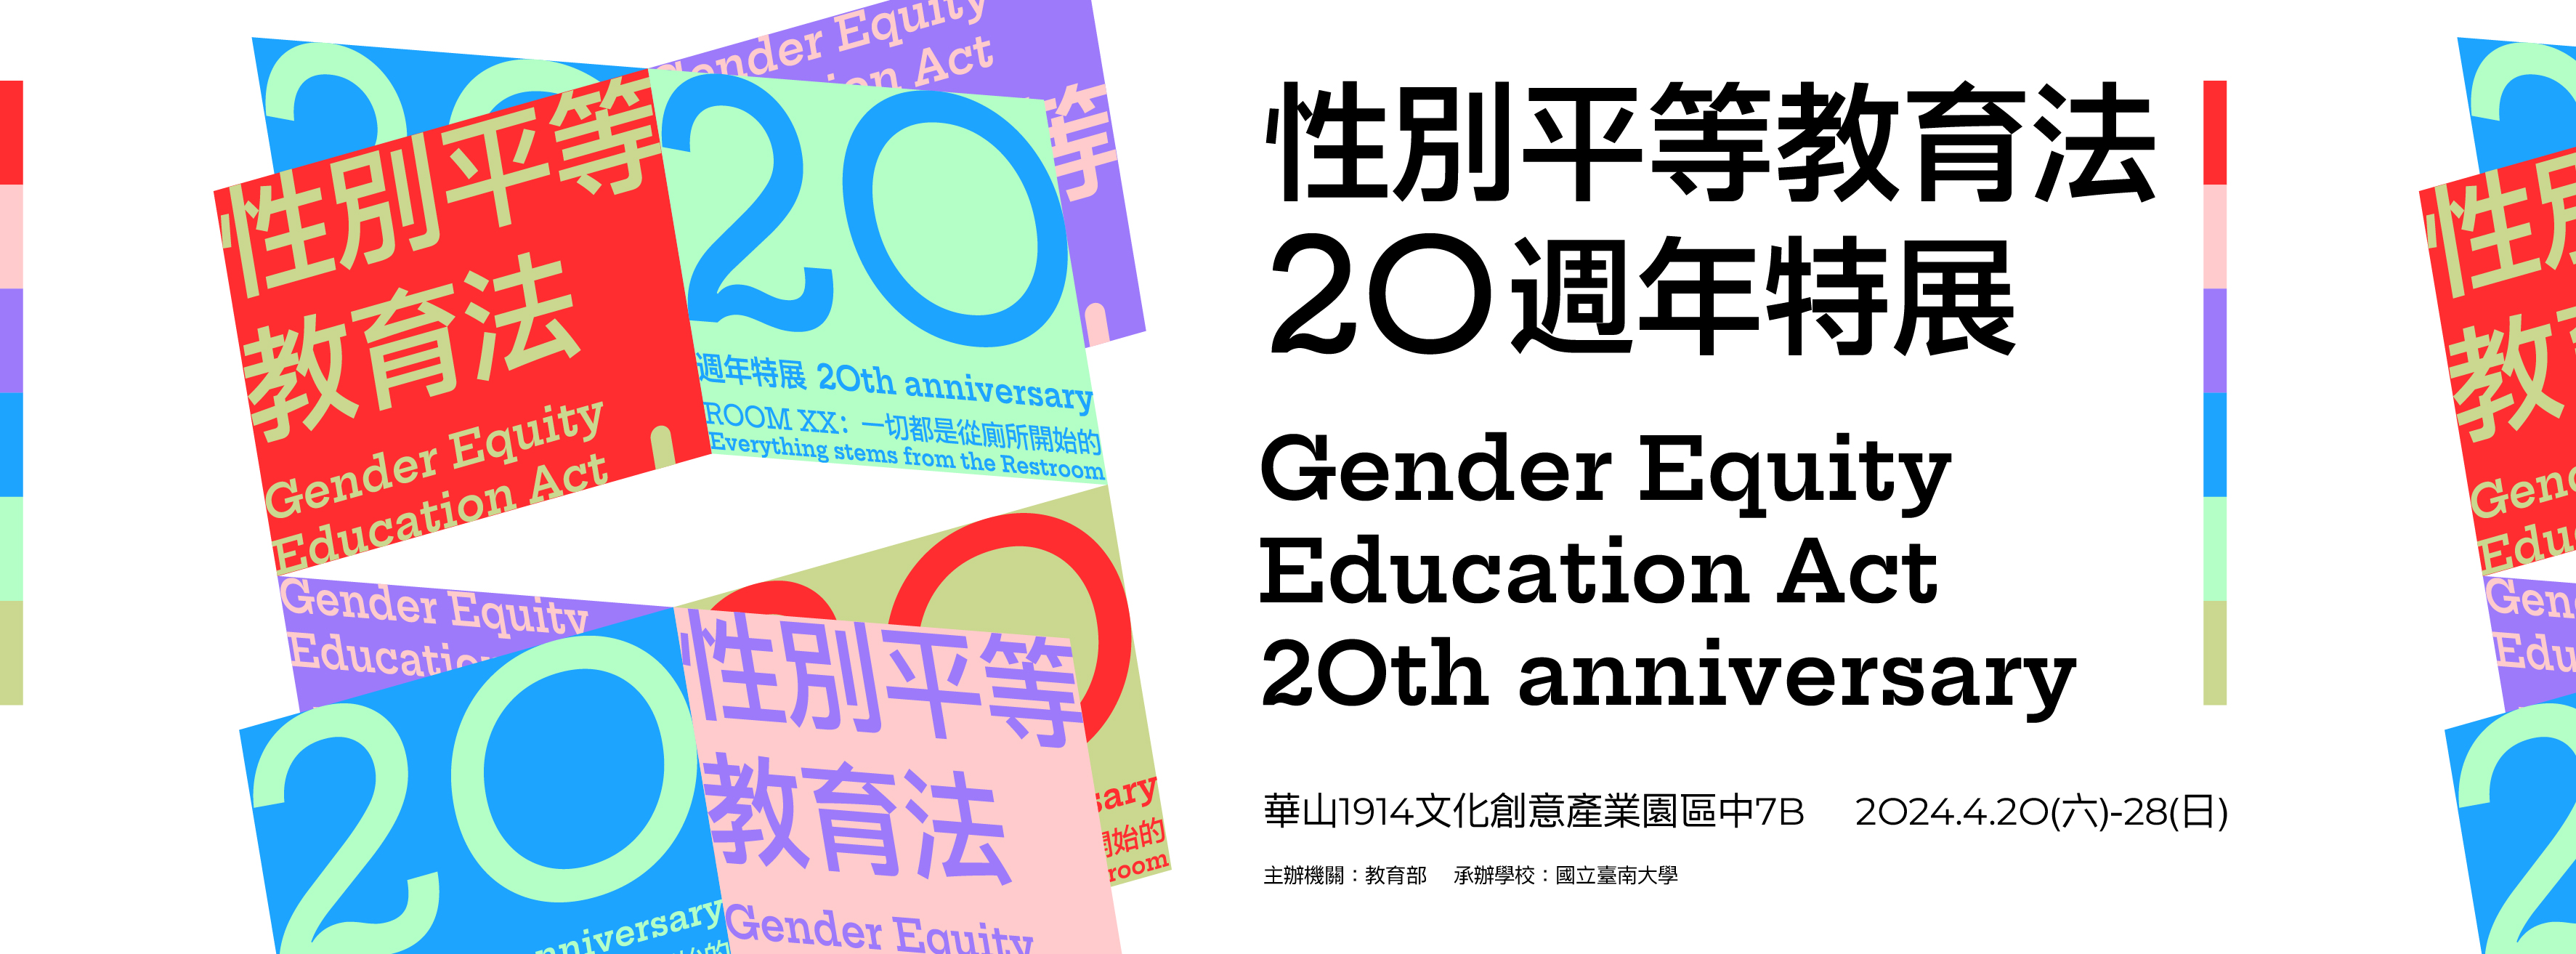 轉知「教育部別平等教育法20週年特展」活動